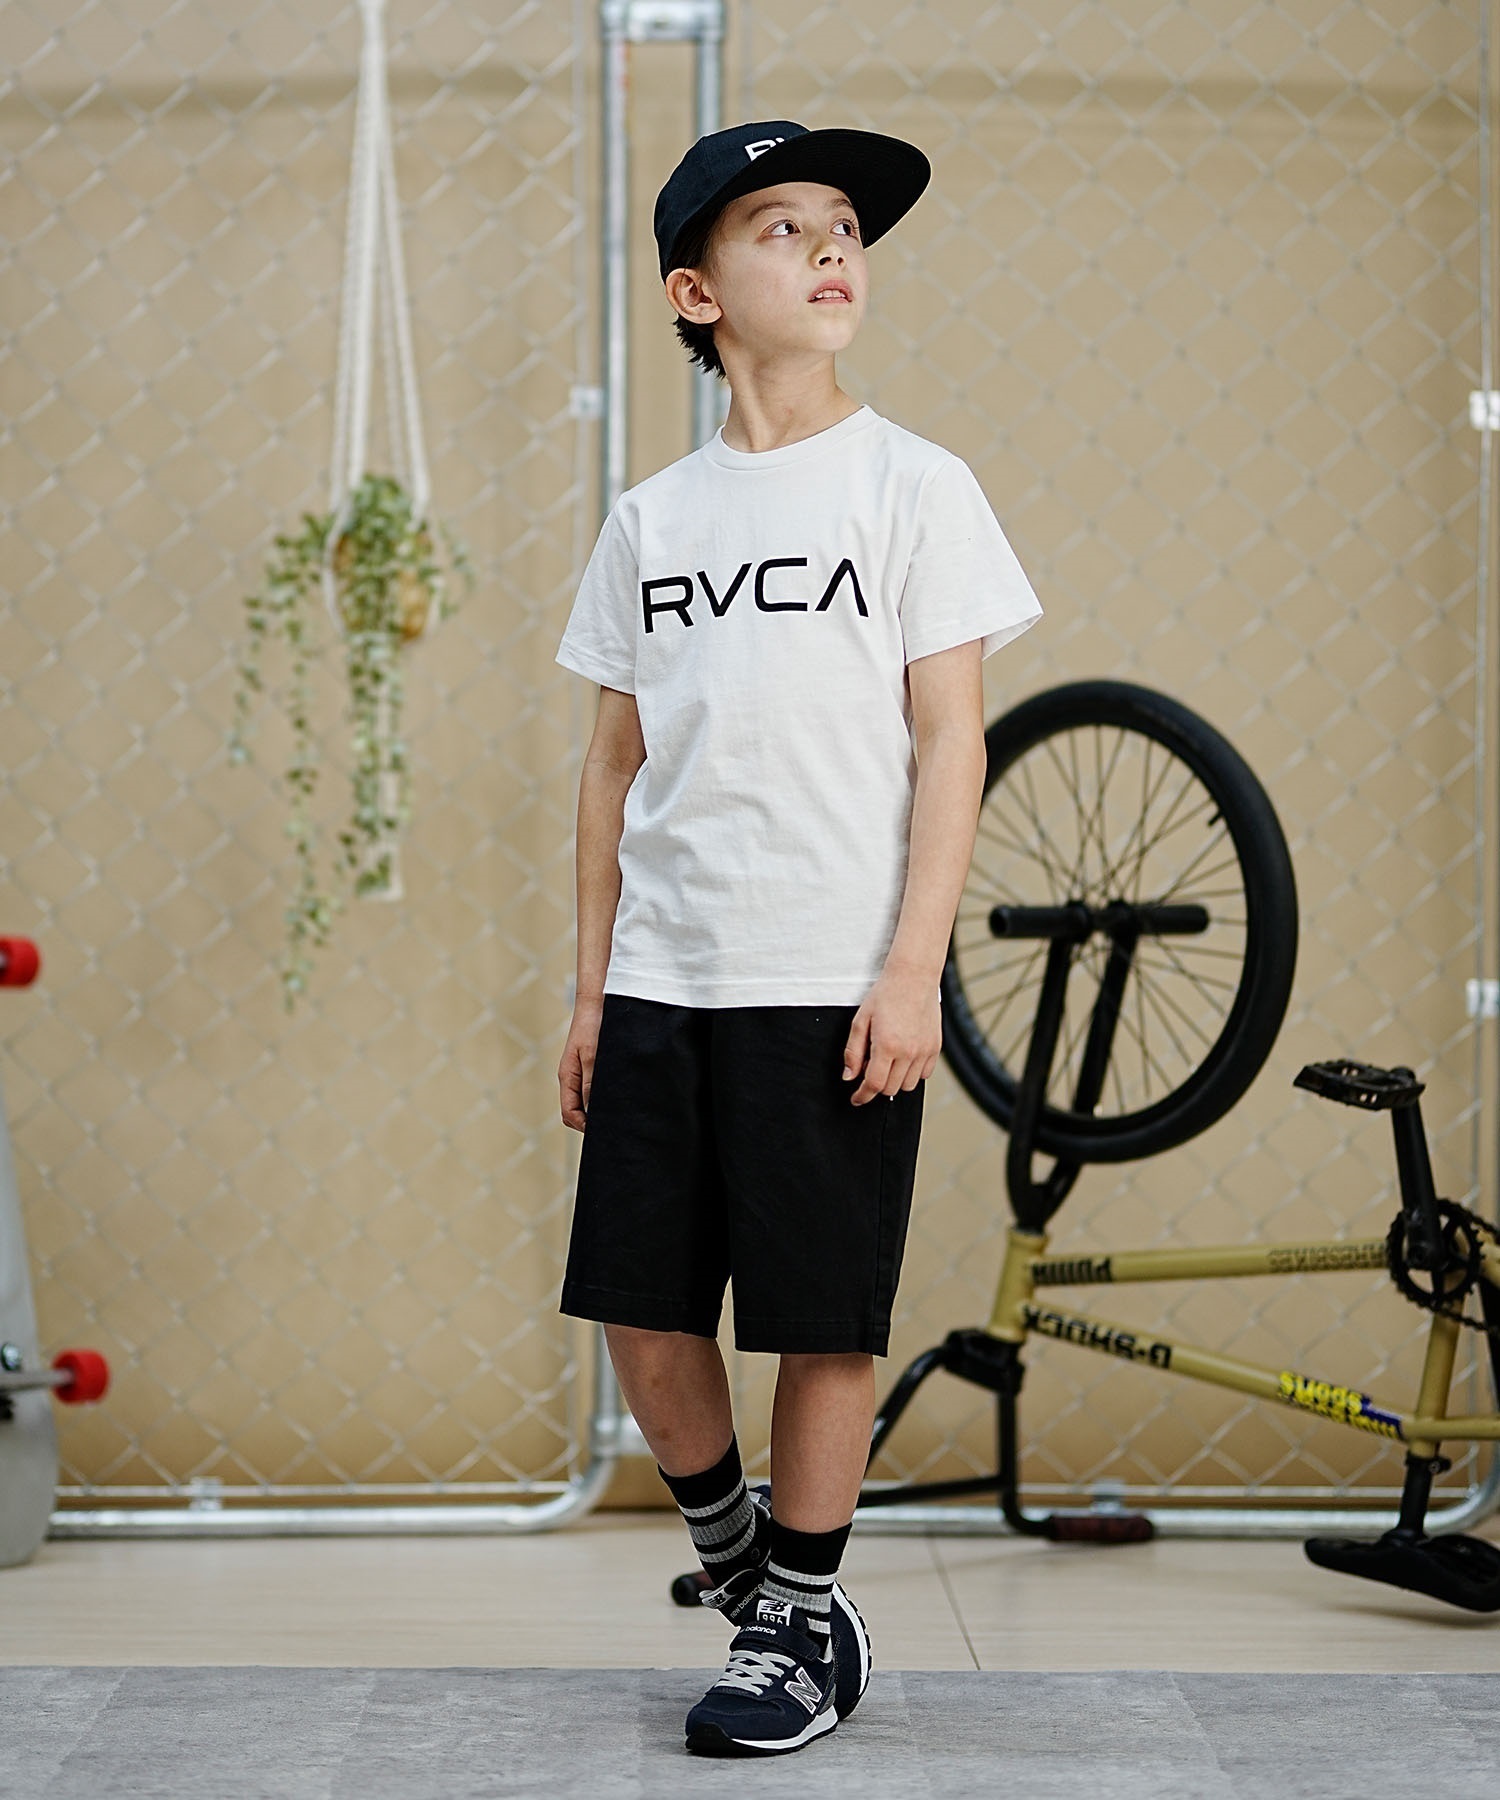 【クーポン対象】RVCA ルーカ キッズ 半袖Tシャツ 定番ロゴデザイン 親子コーデ BE045-226(KVCY-130cm)